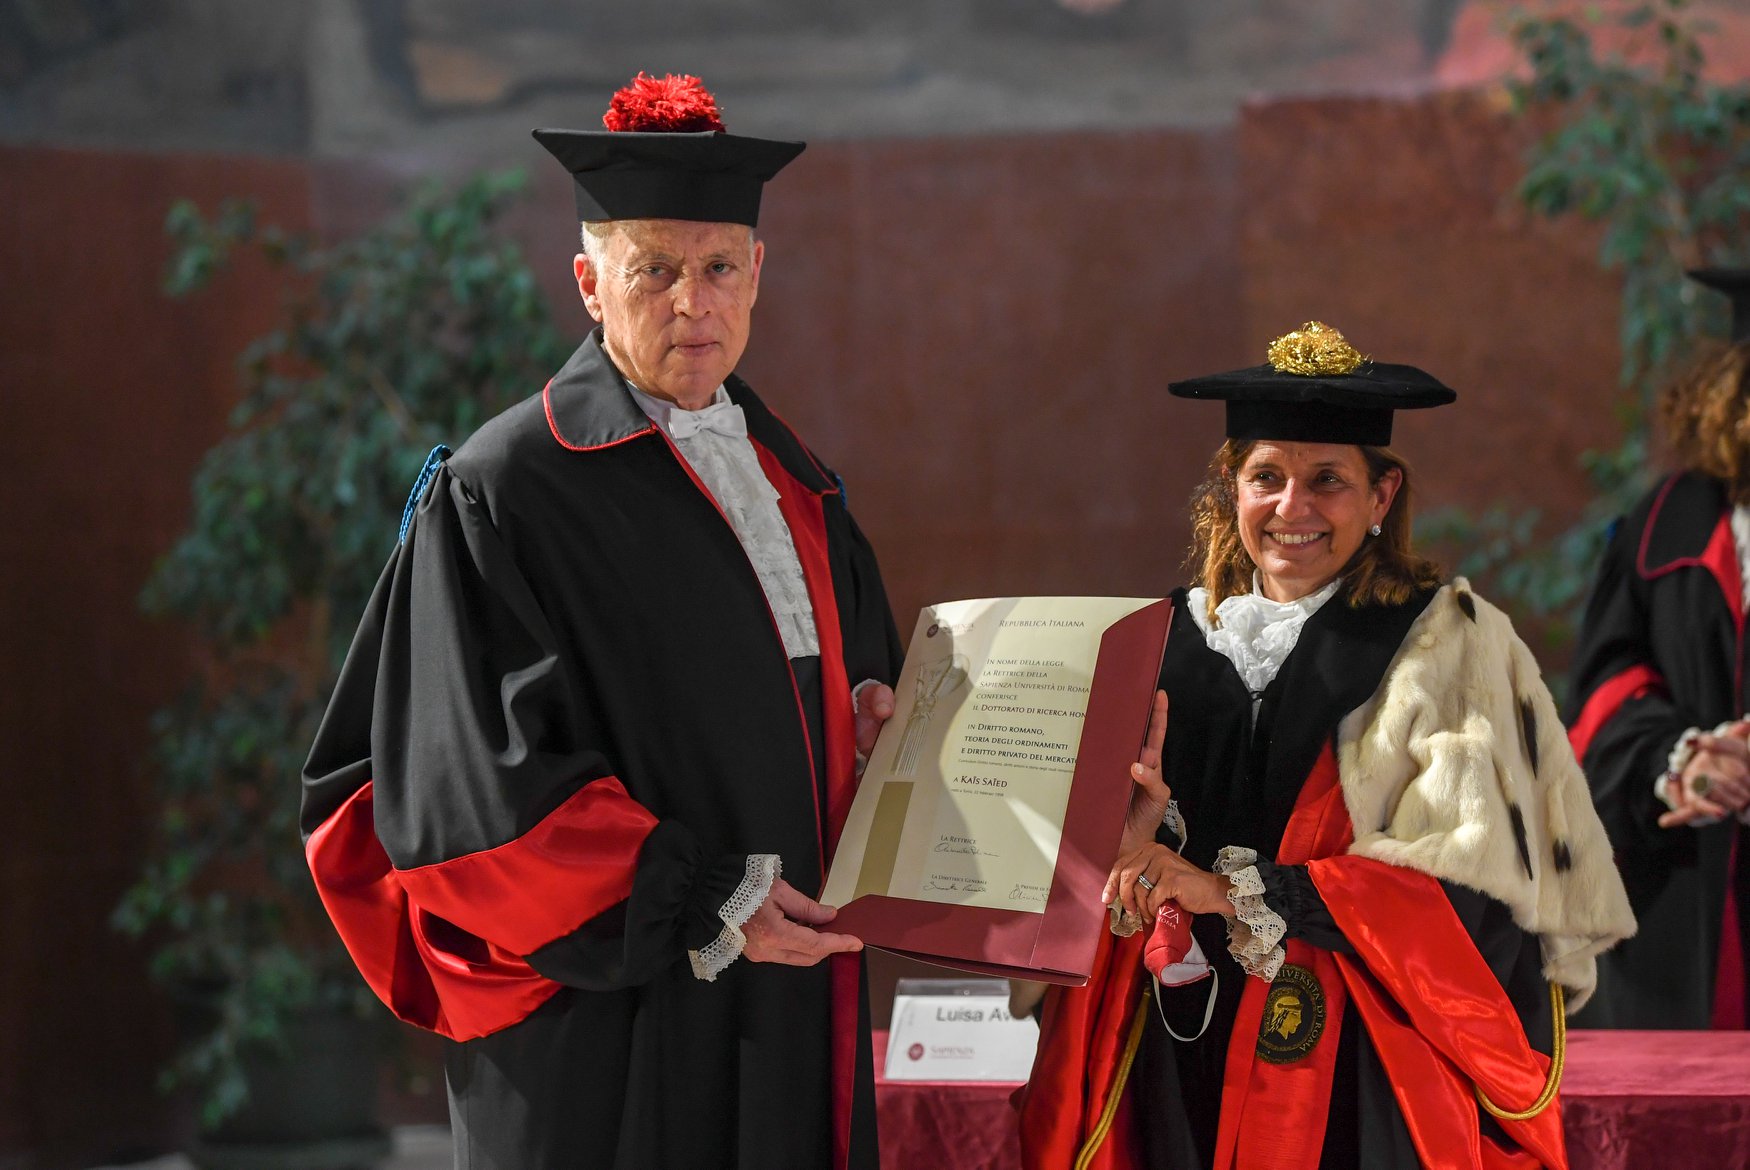 Tunisie-Visite de Kais Saied en Italie: Le Chef d’Etat reçoit un doctorat honoris causa [Photos]